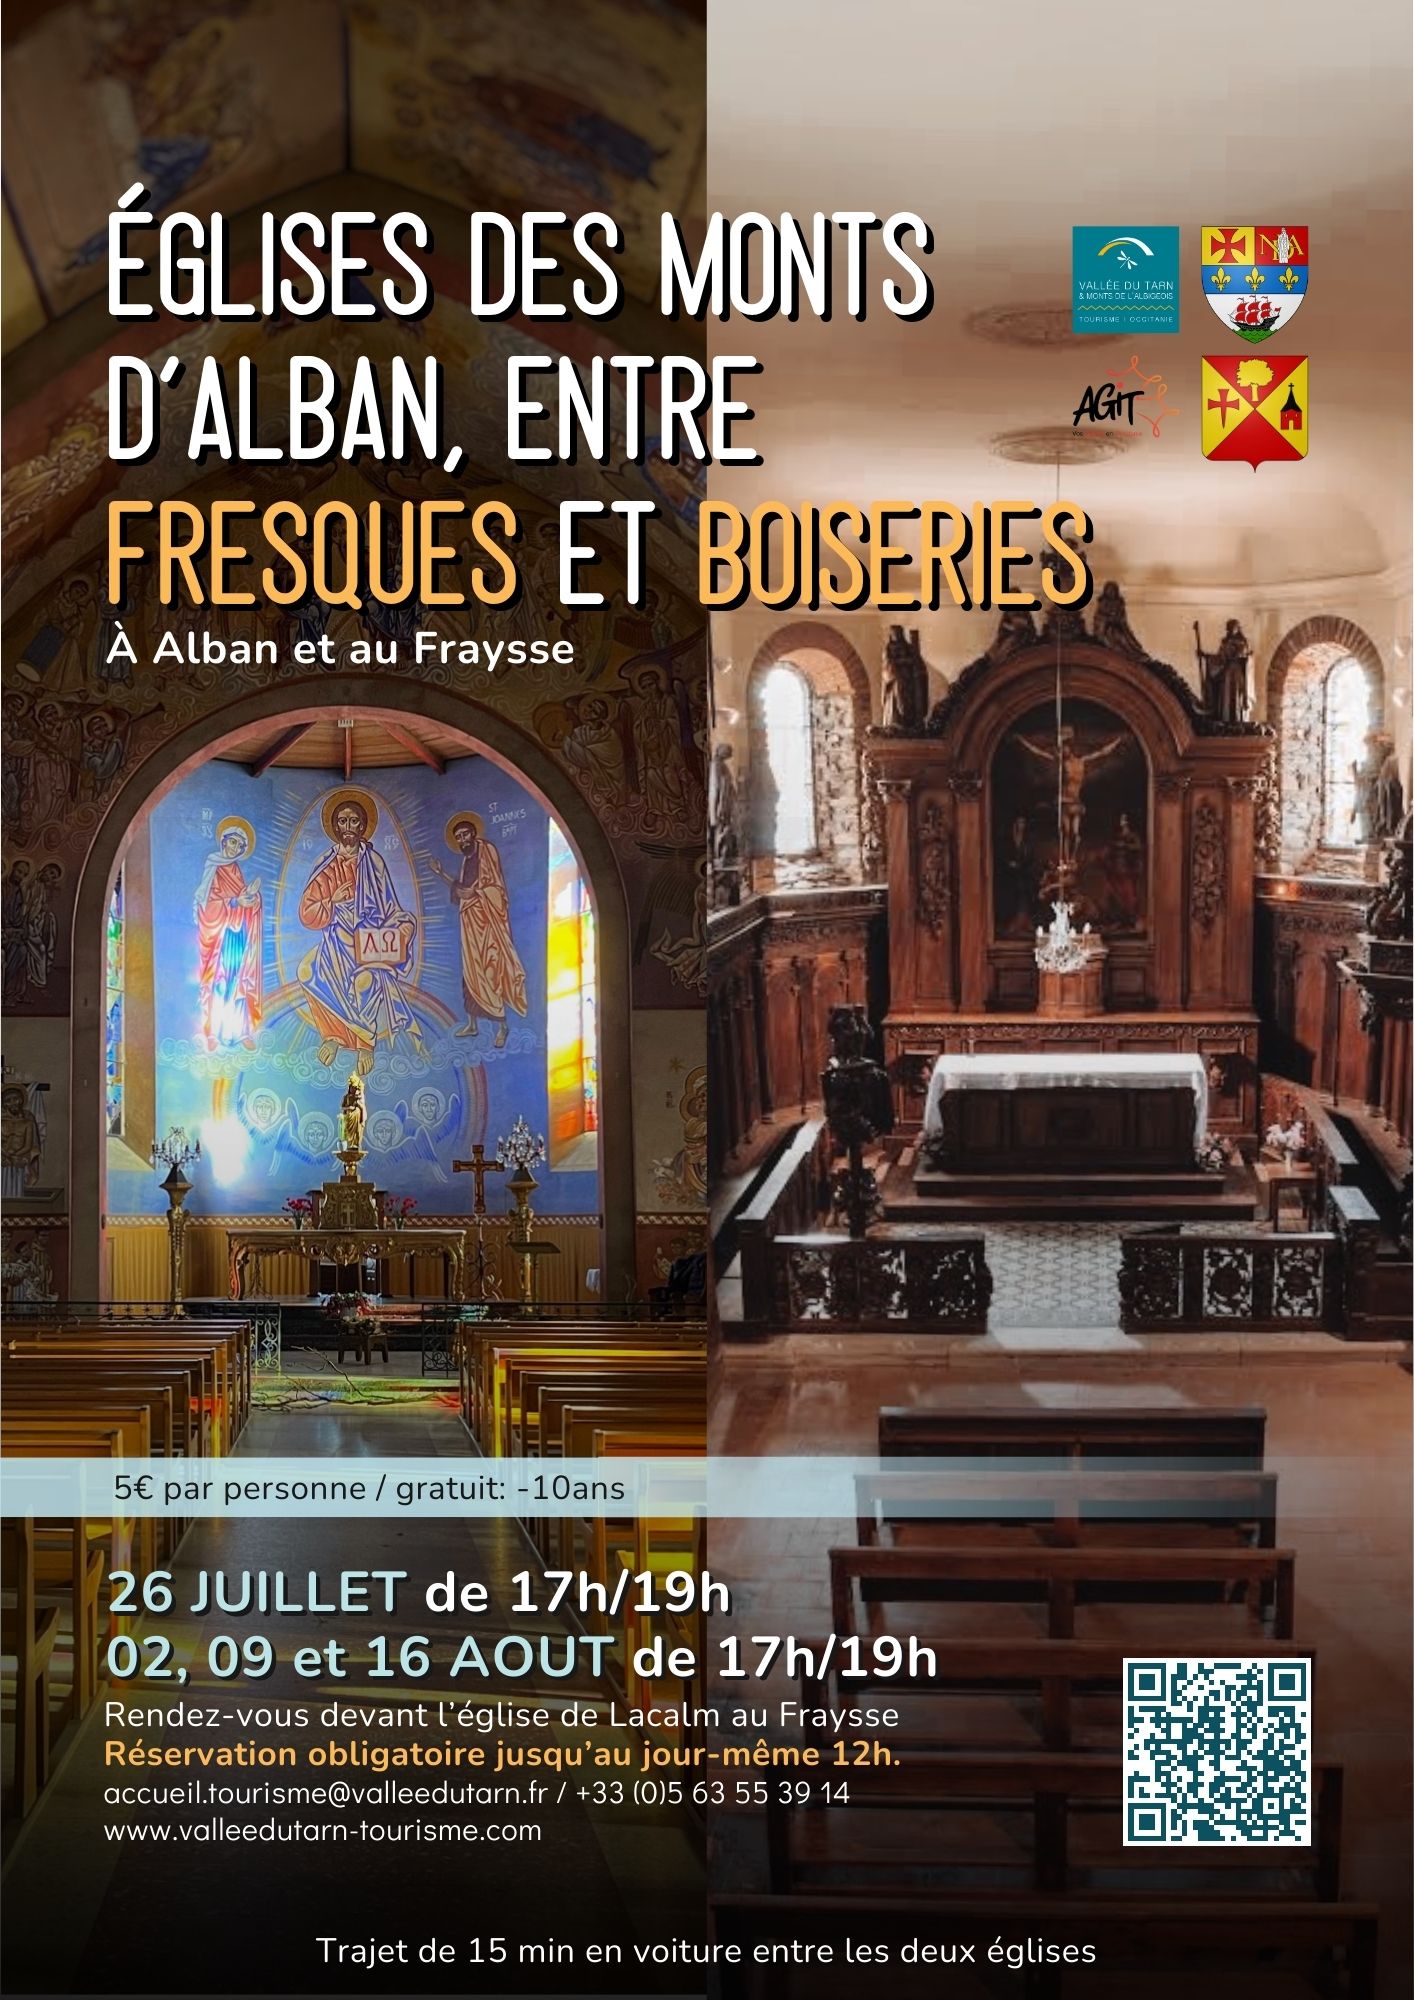 Eglises des Monts d'Alban, entre fresques et boiseries.